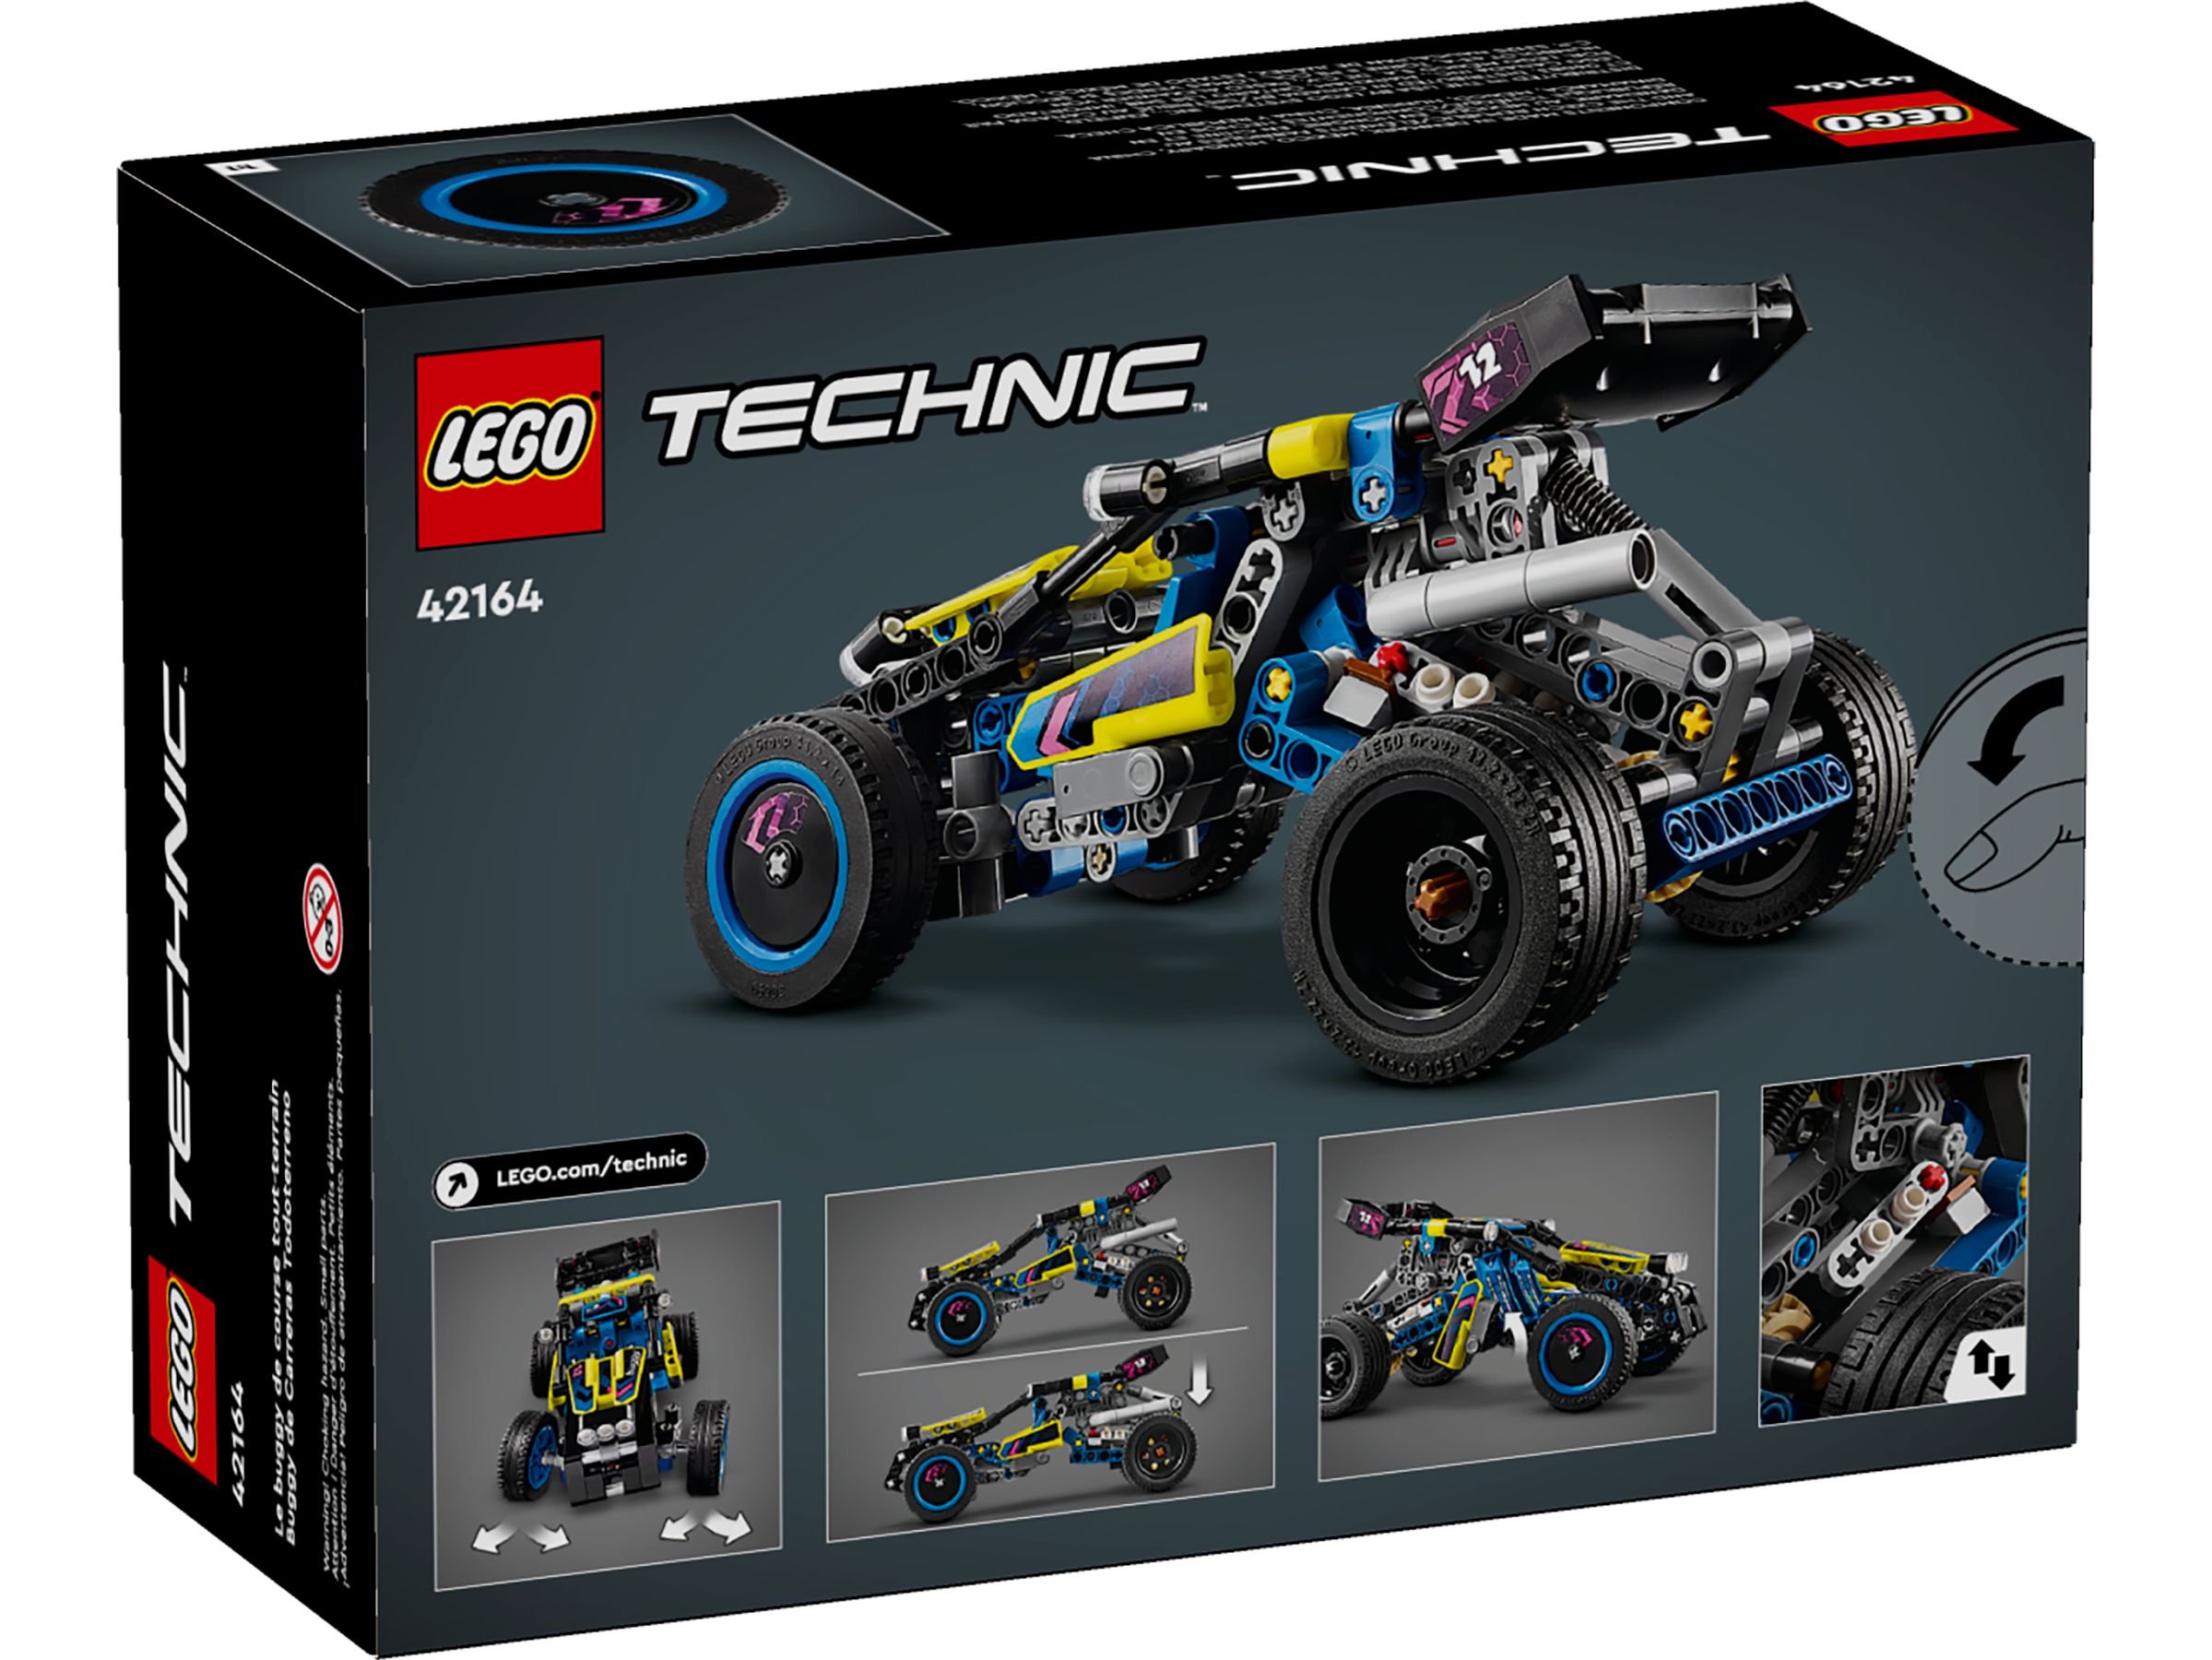 LEGO Technic 42164 Offroad Rennbuggy LEGO_42164_alt7.jpg